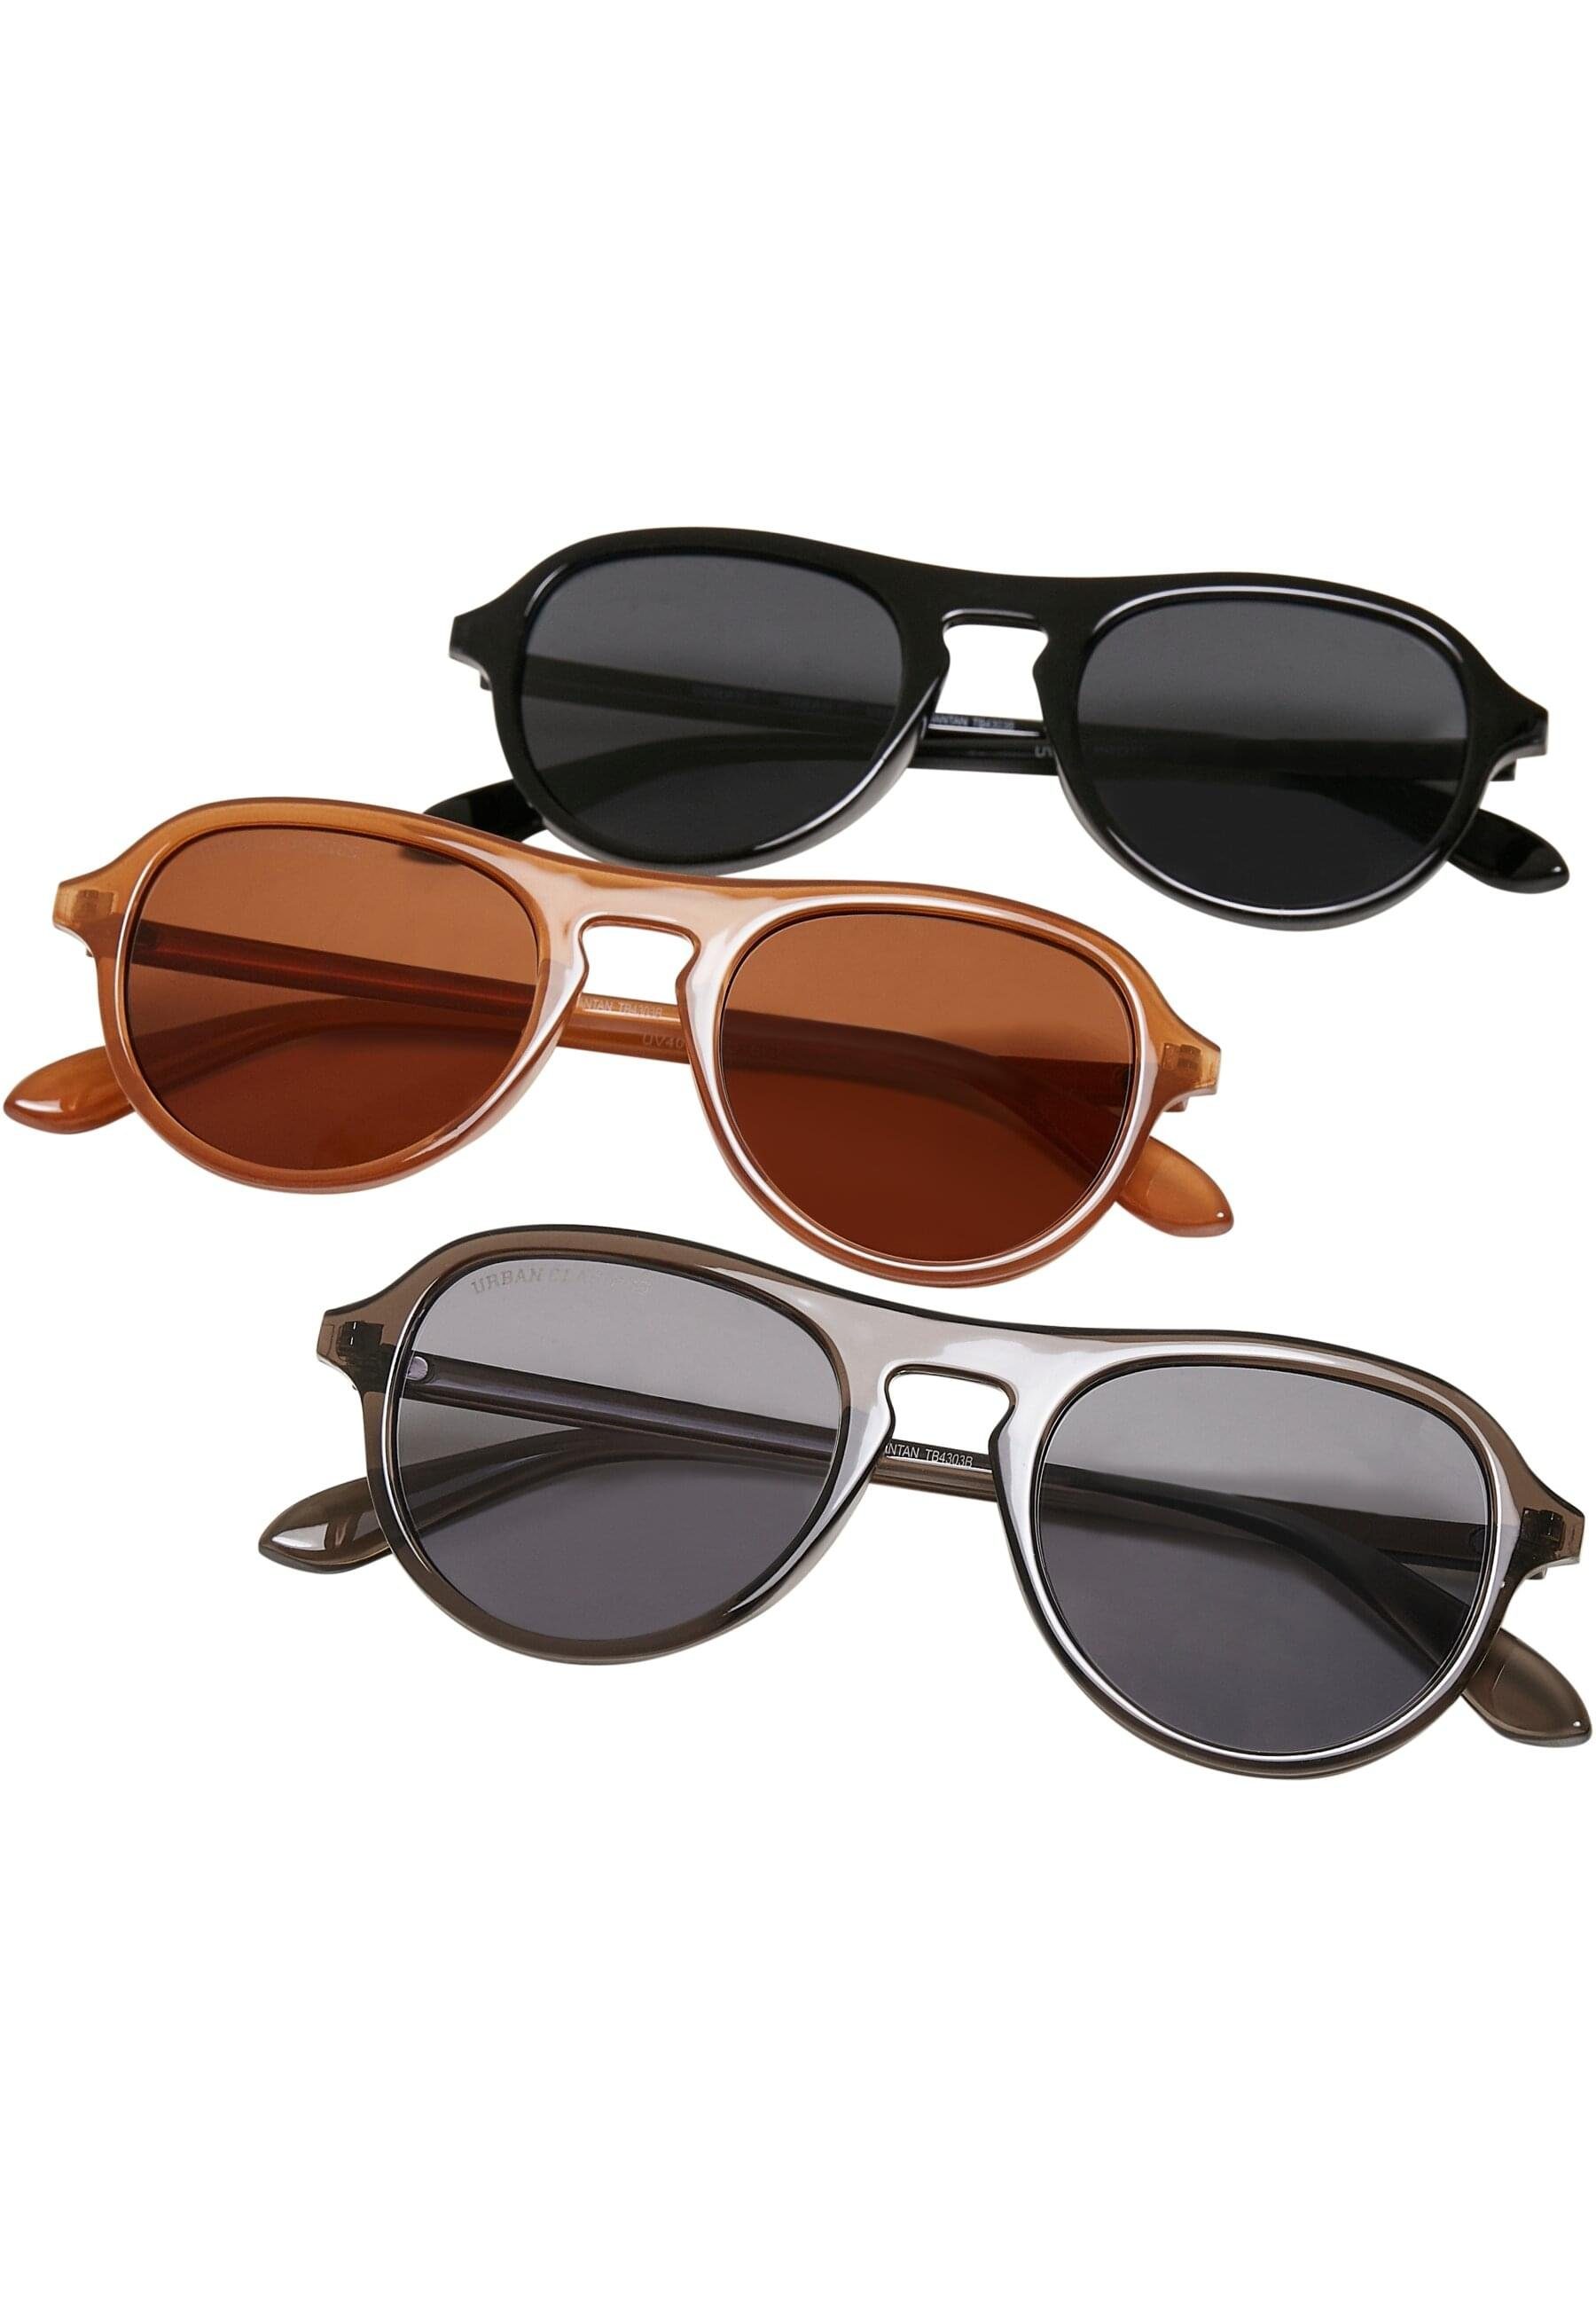 Sunglasses URBAN Kalimantan Sonnenbrille Unisex CLASSICS 3-Pack